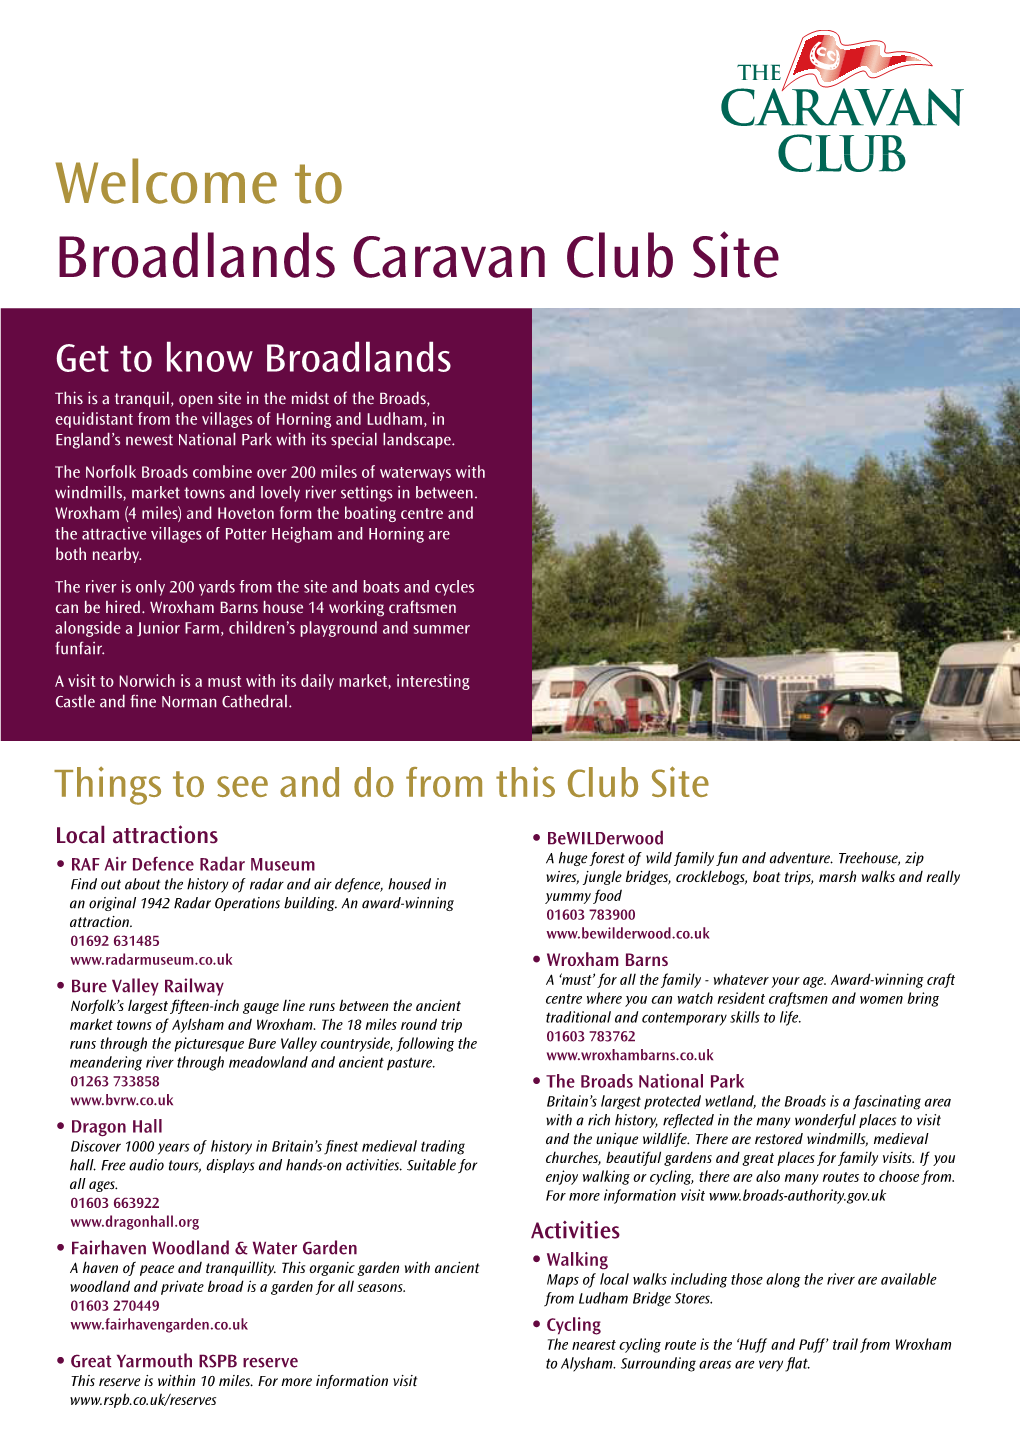 Welcome to Broadlands Caravan Club Site